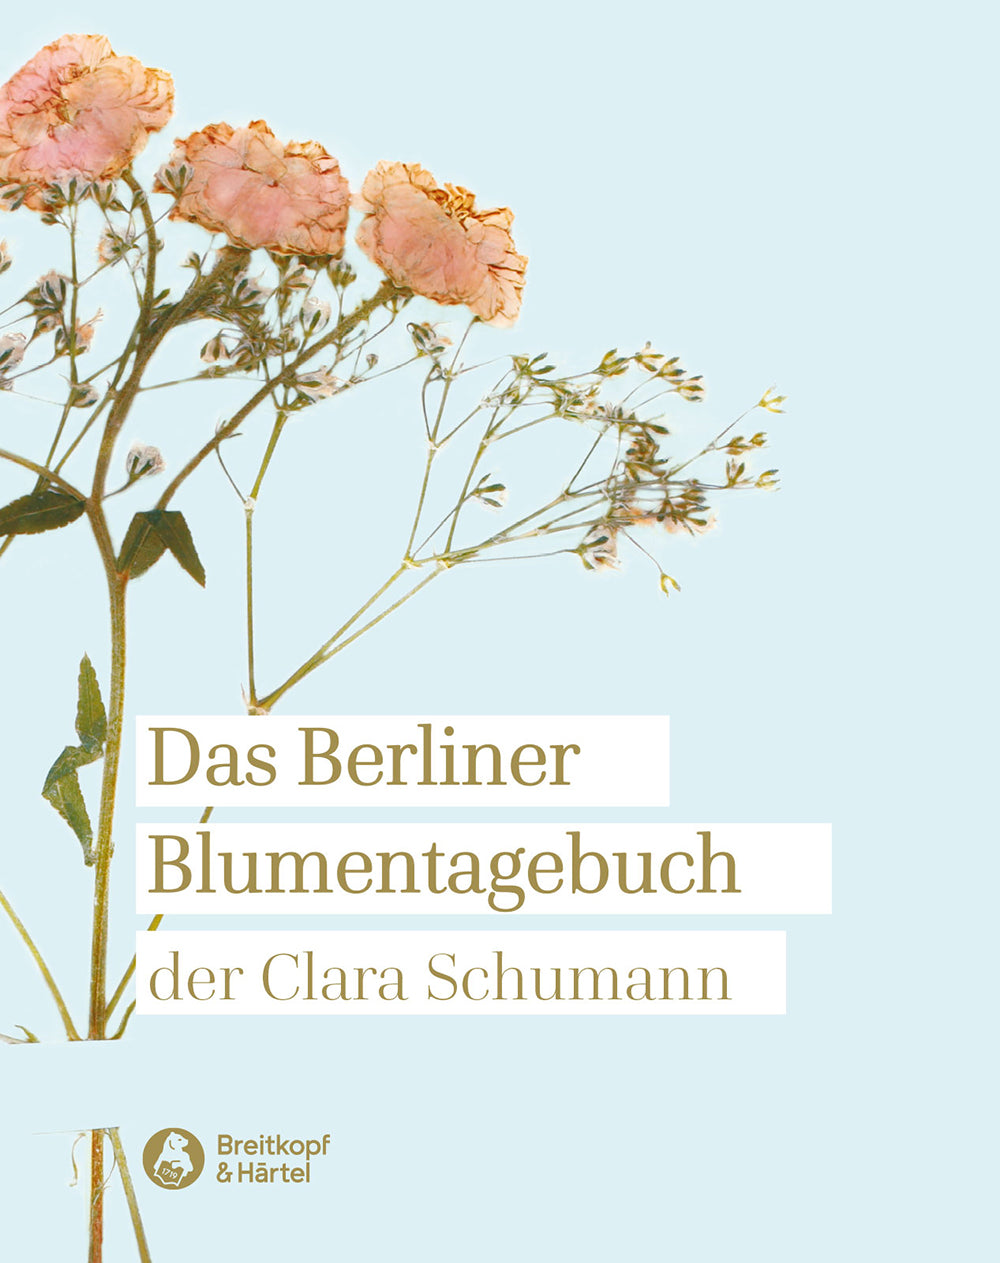 The Berlin Flower Diary of Clara Schumann